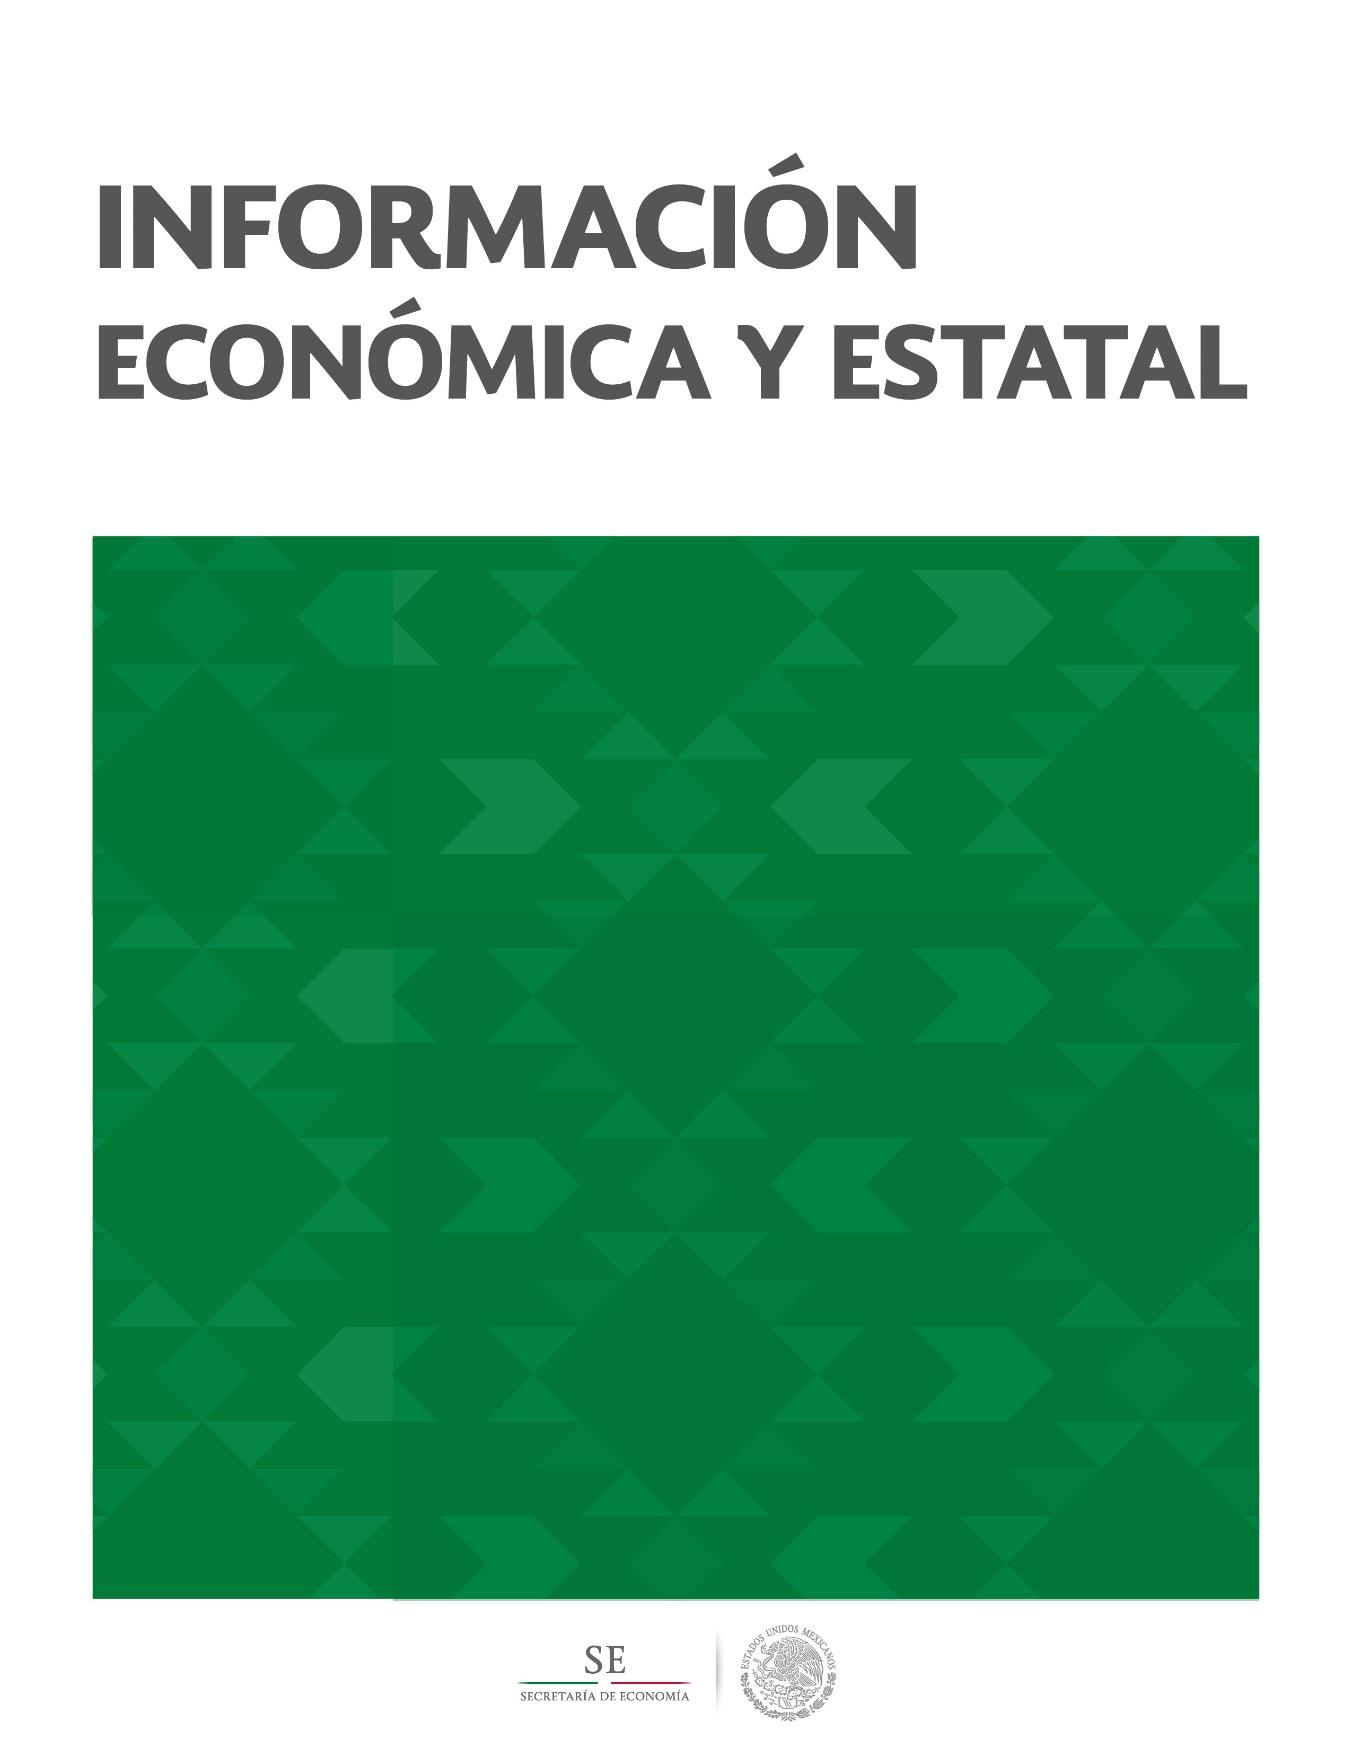 Sinaloa Contenido Geografía y Población 2 Actividad Económica 5 Sector